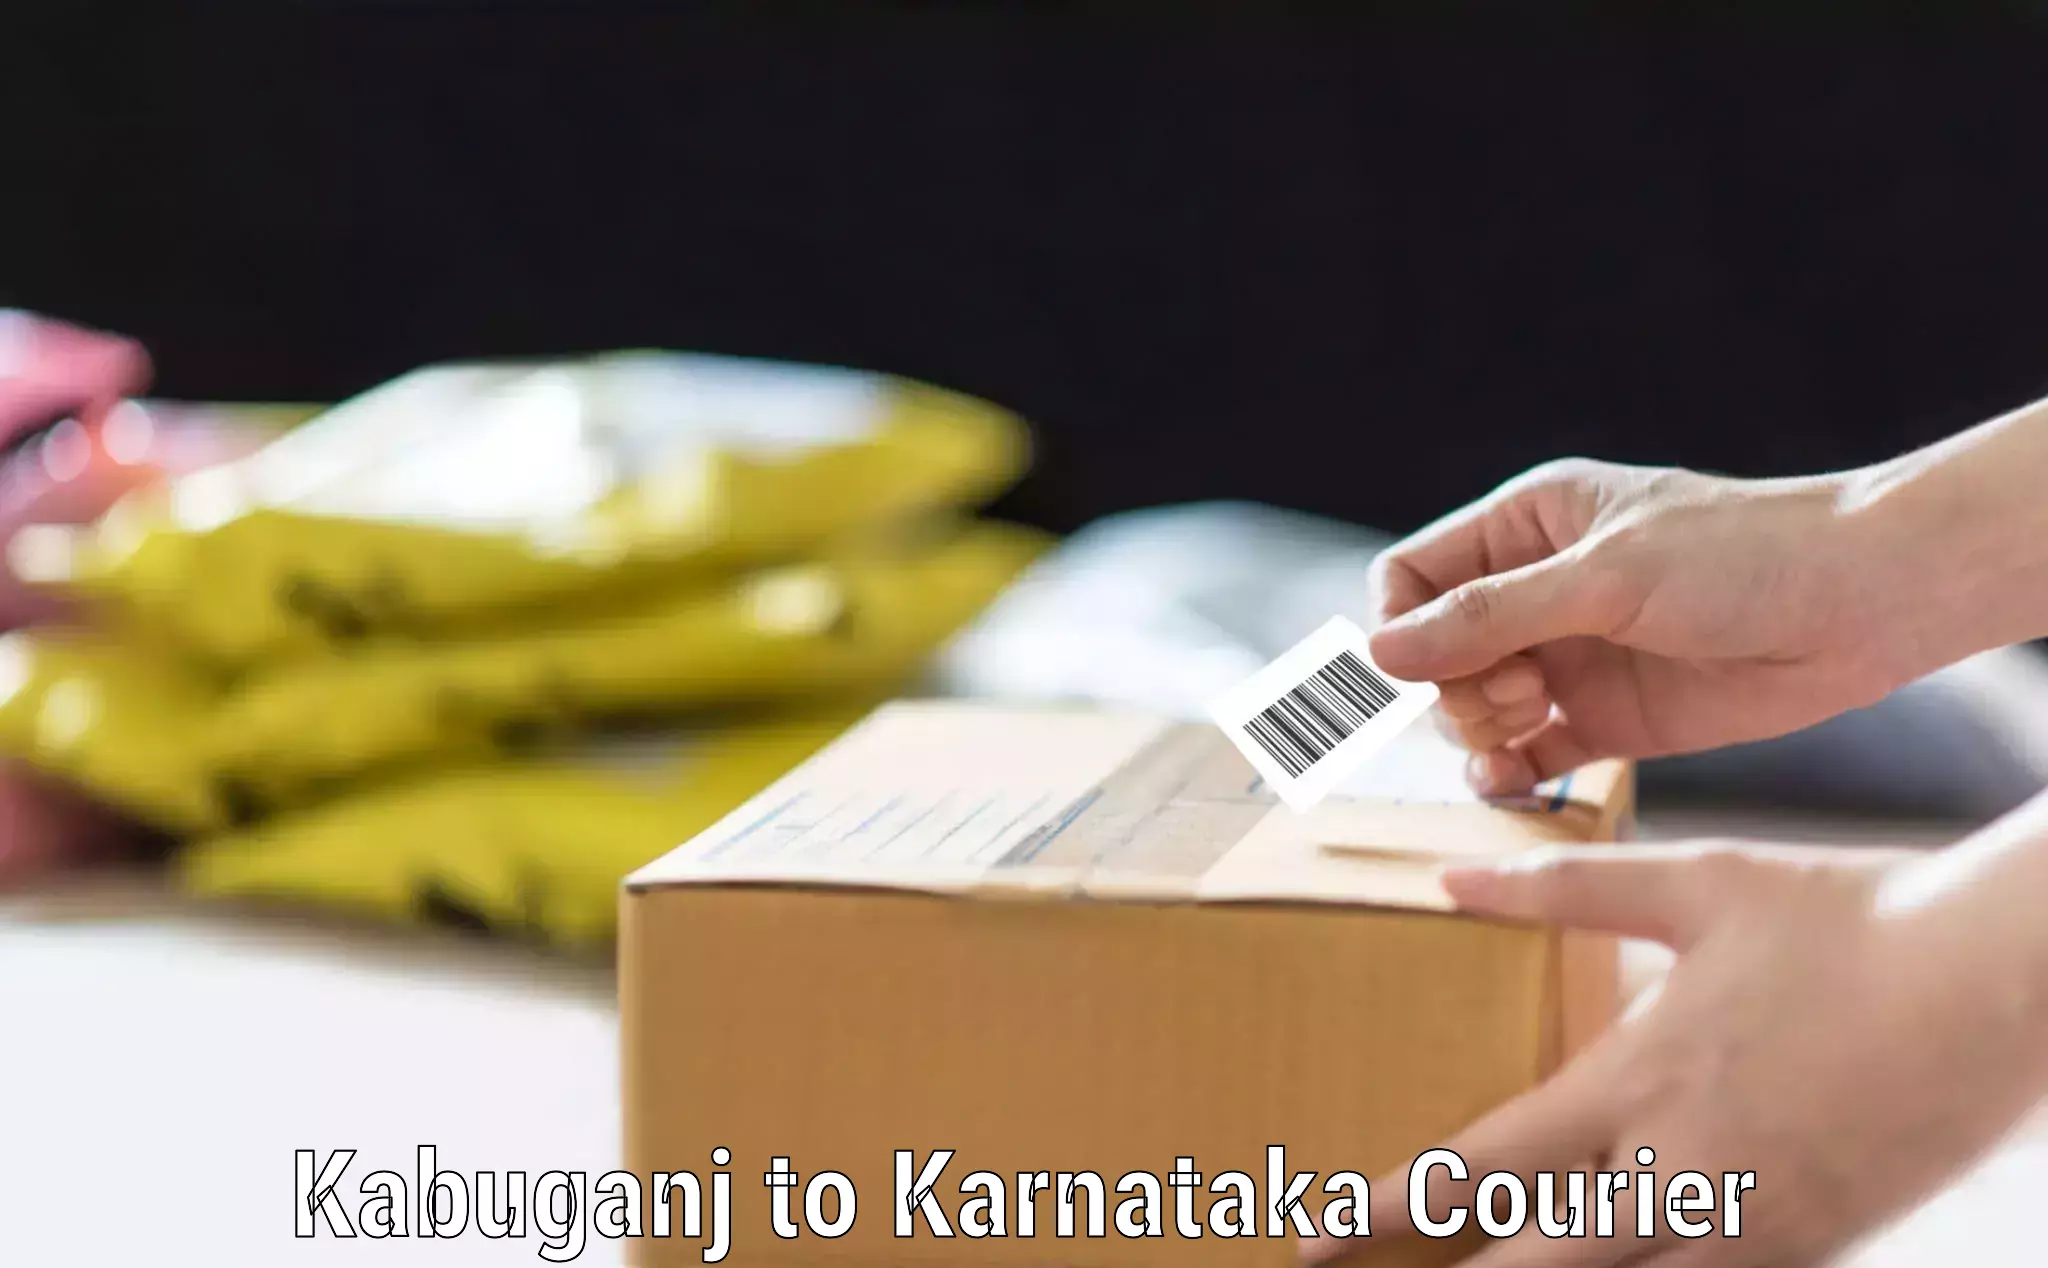 Baggage delivery scheduling Kabuganj to Karnataka